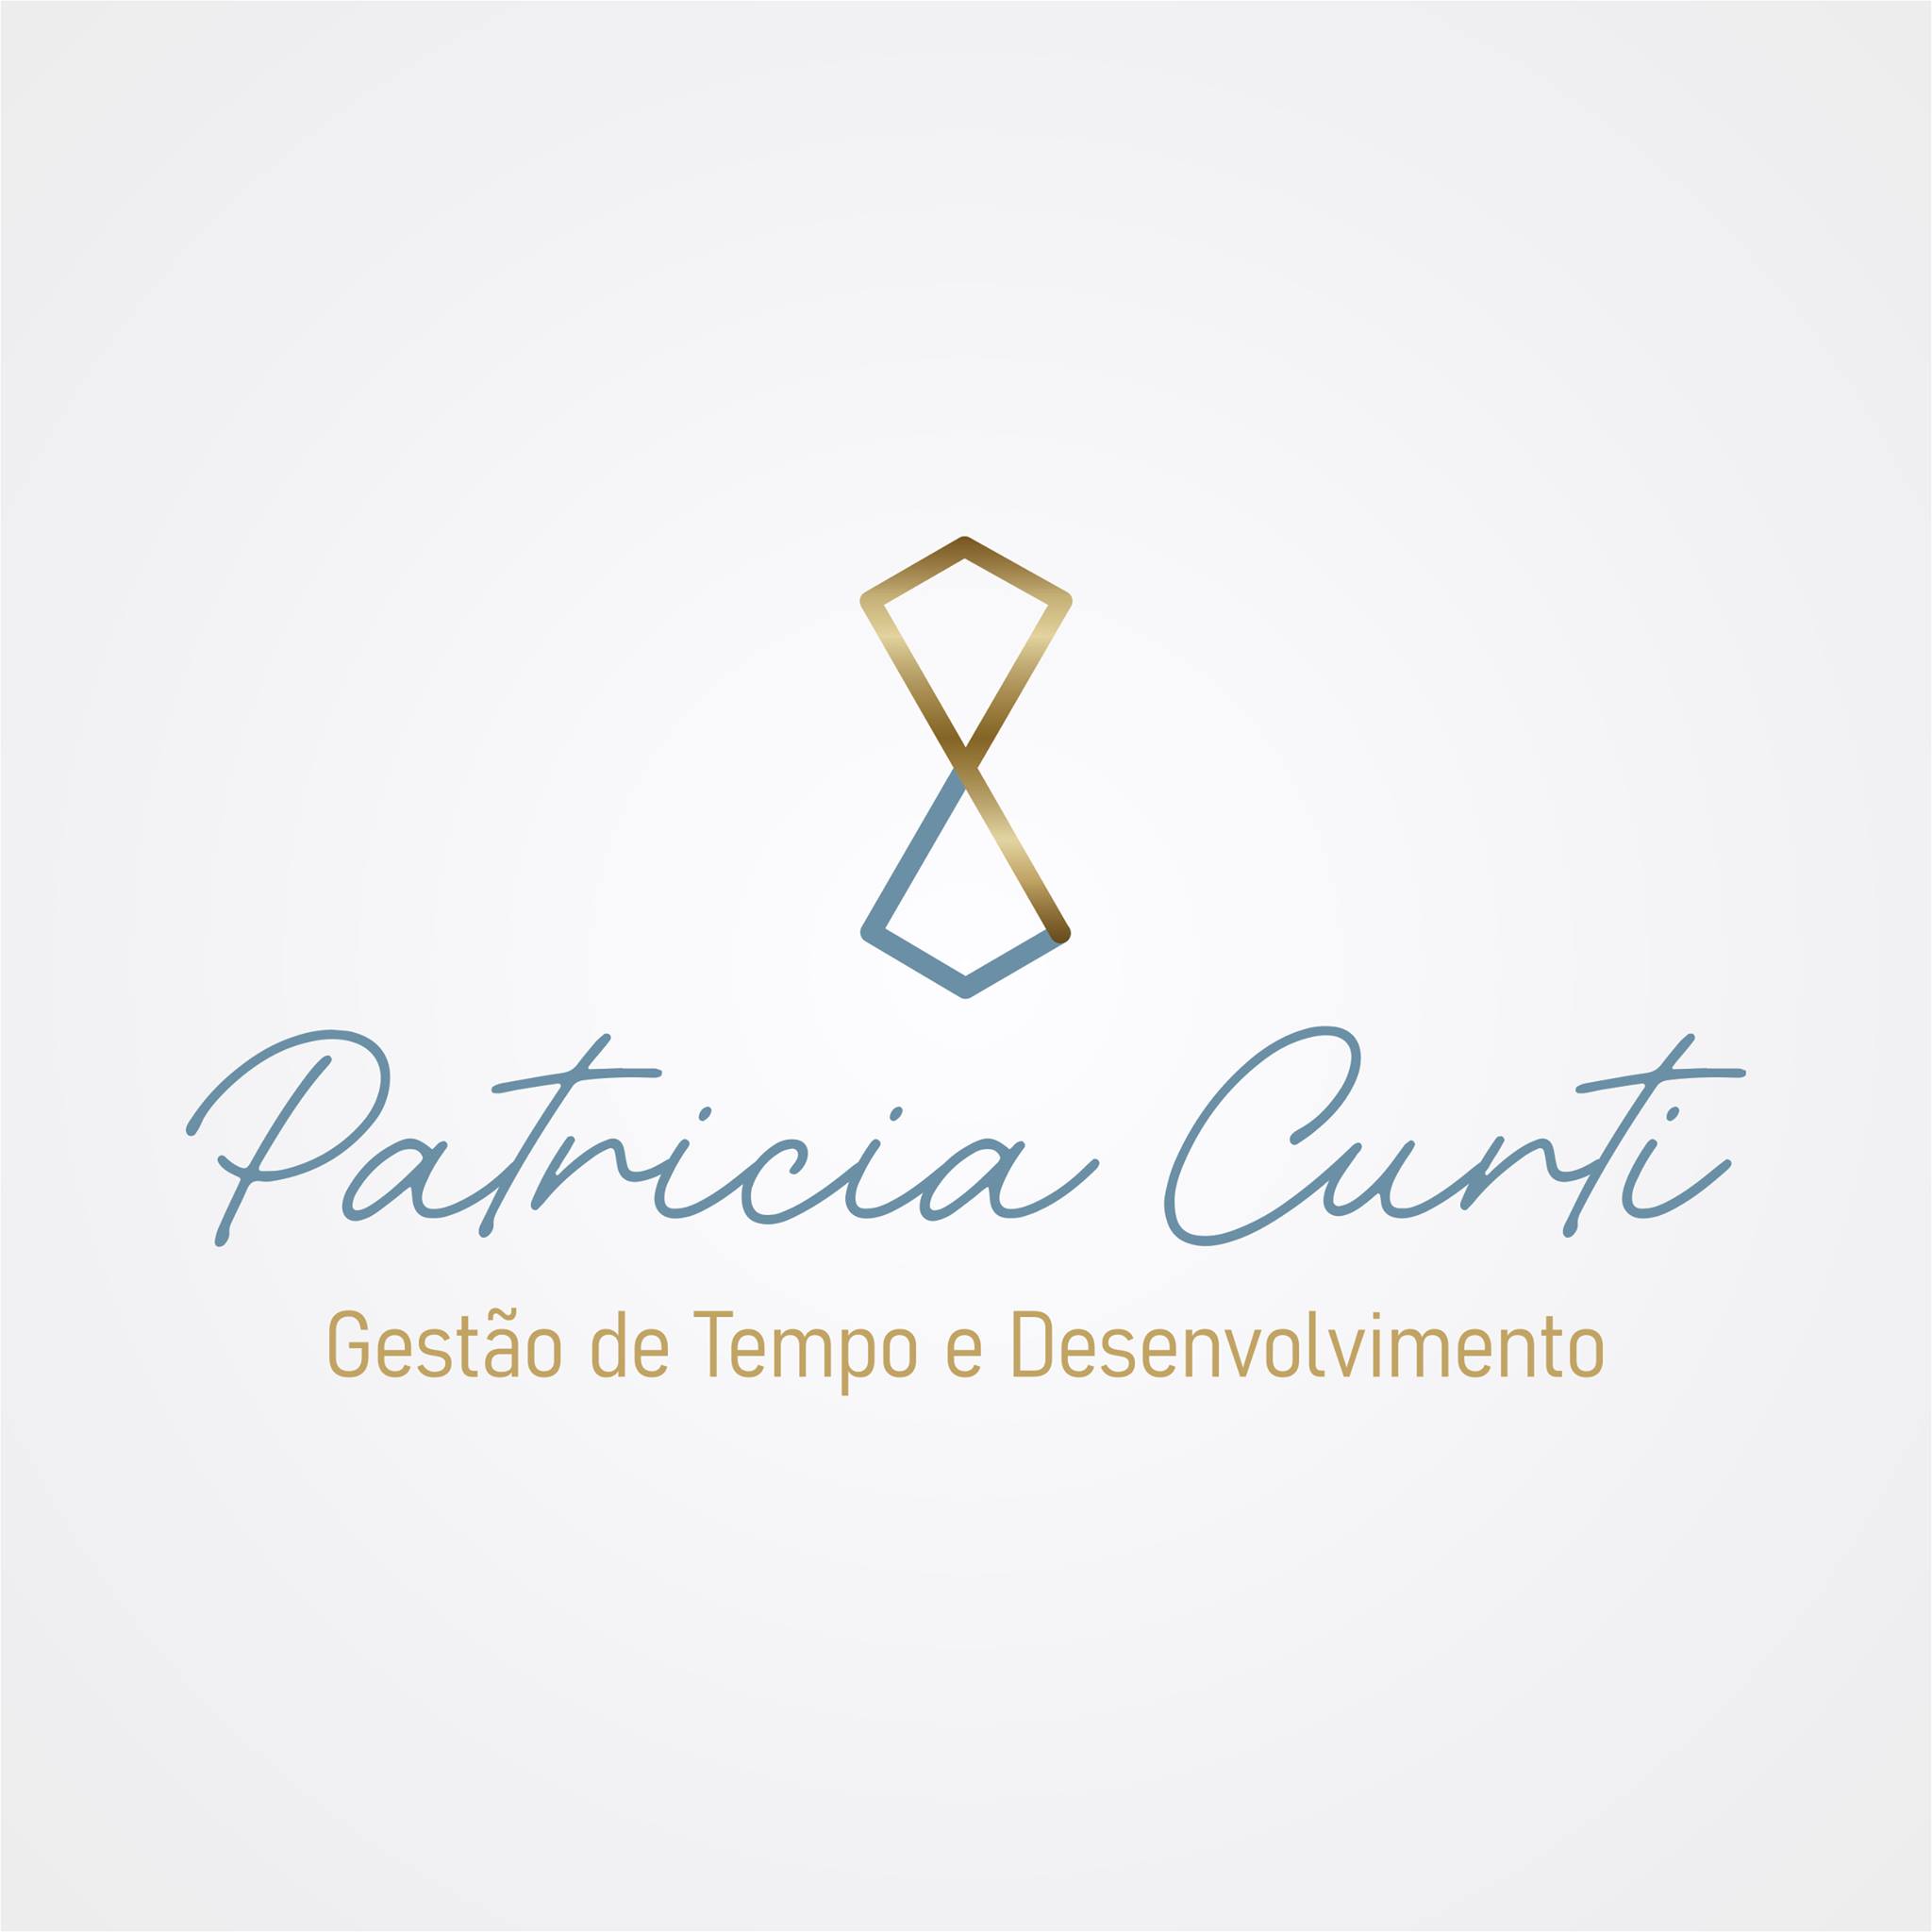 Patricia Curti Gestão de Tempo e Desenvolvimento